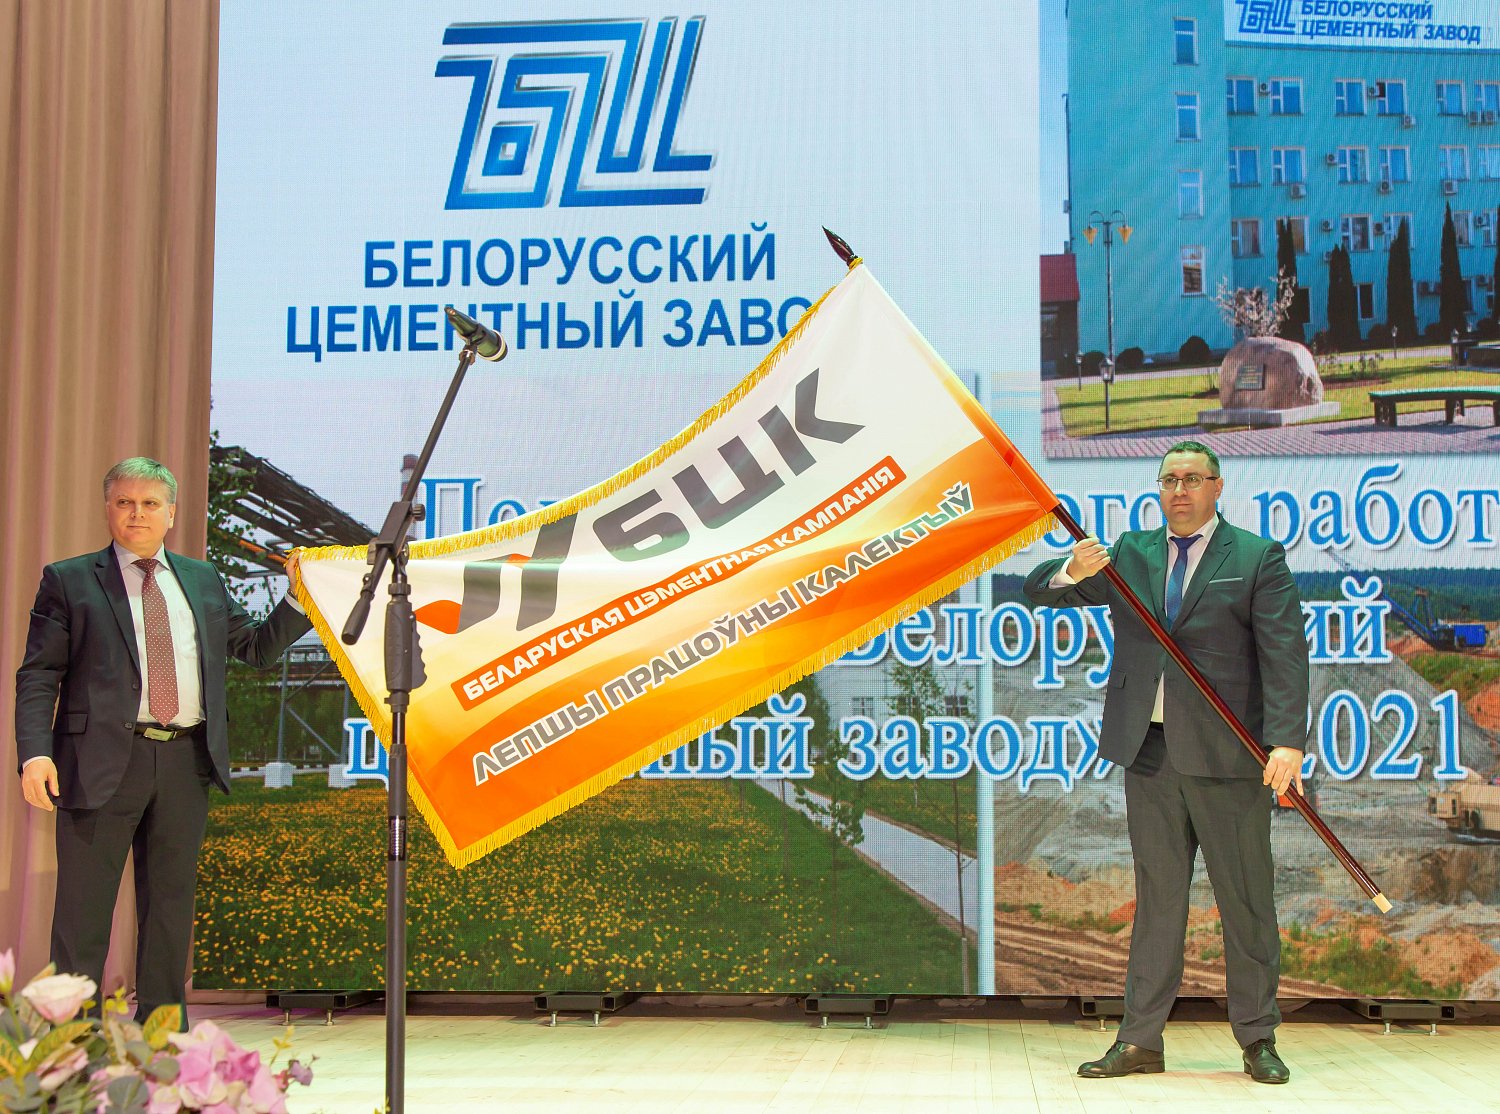 Белорусскому цементному заводу вручено переходящее Почетное знамя холдинга «Белорусская цементная компания»